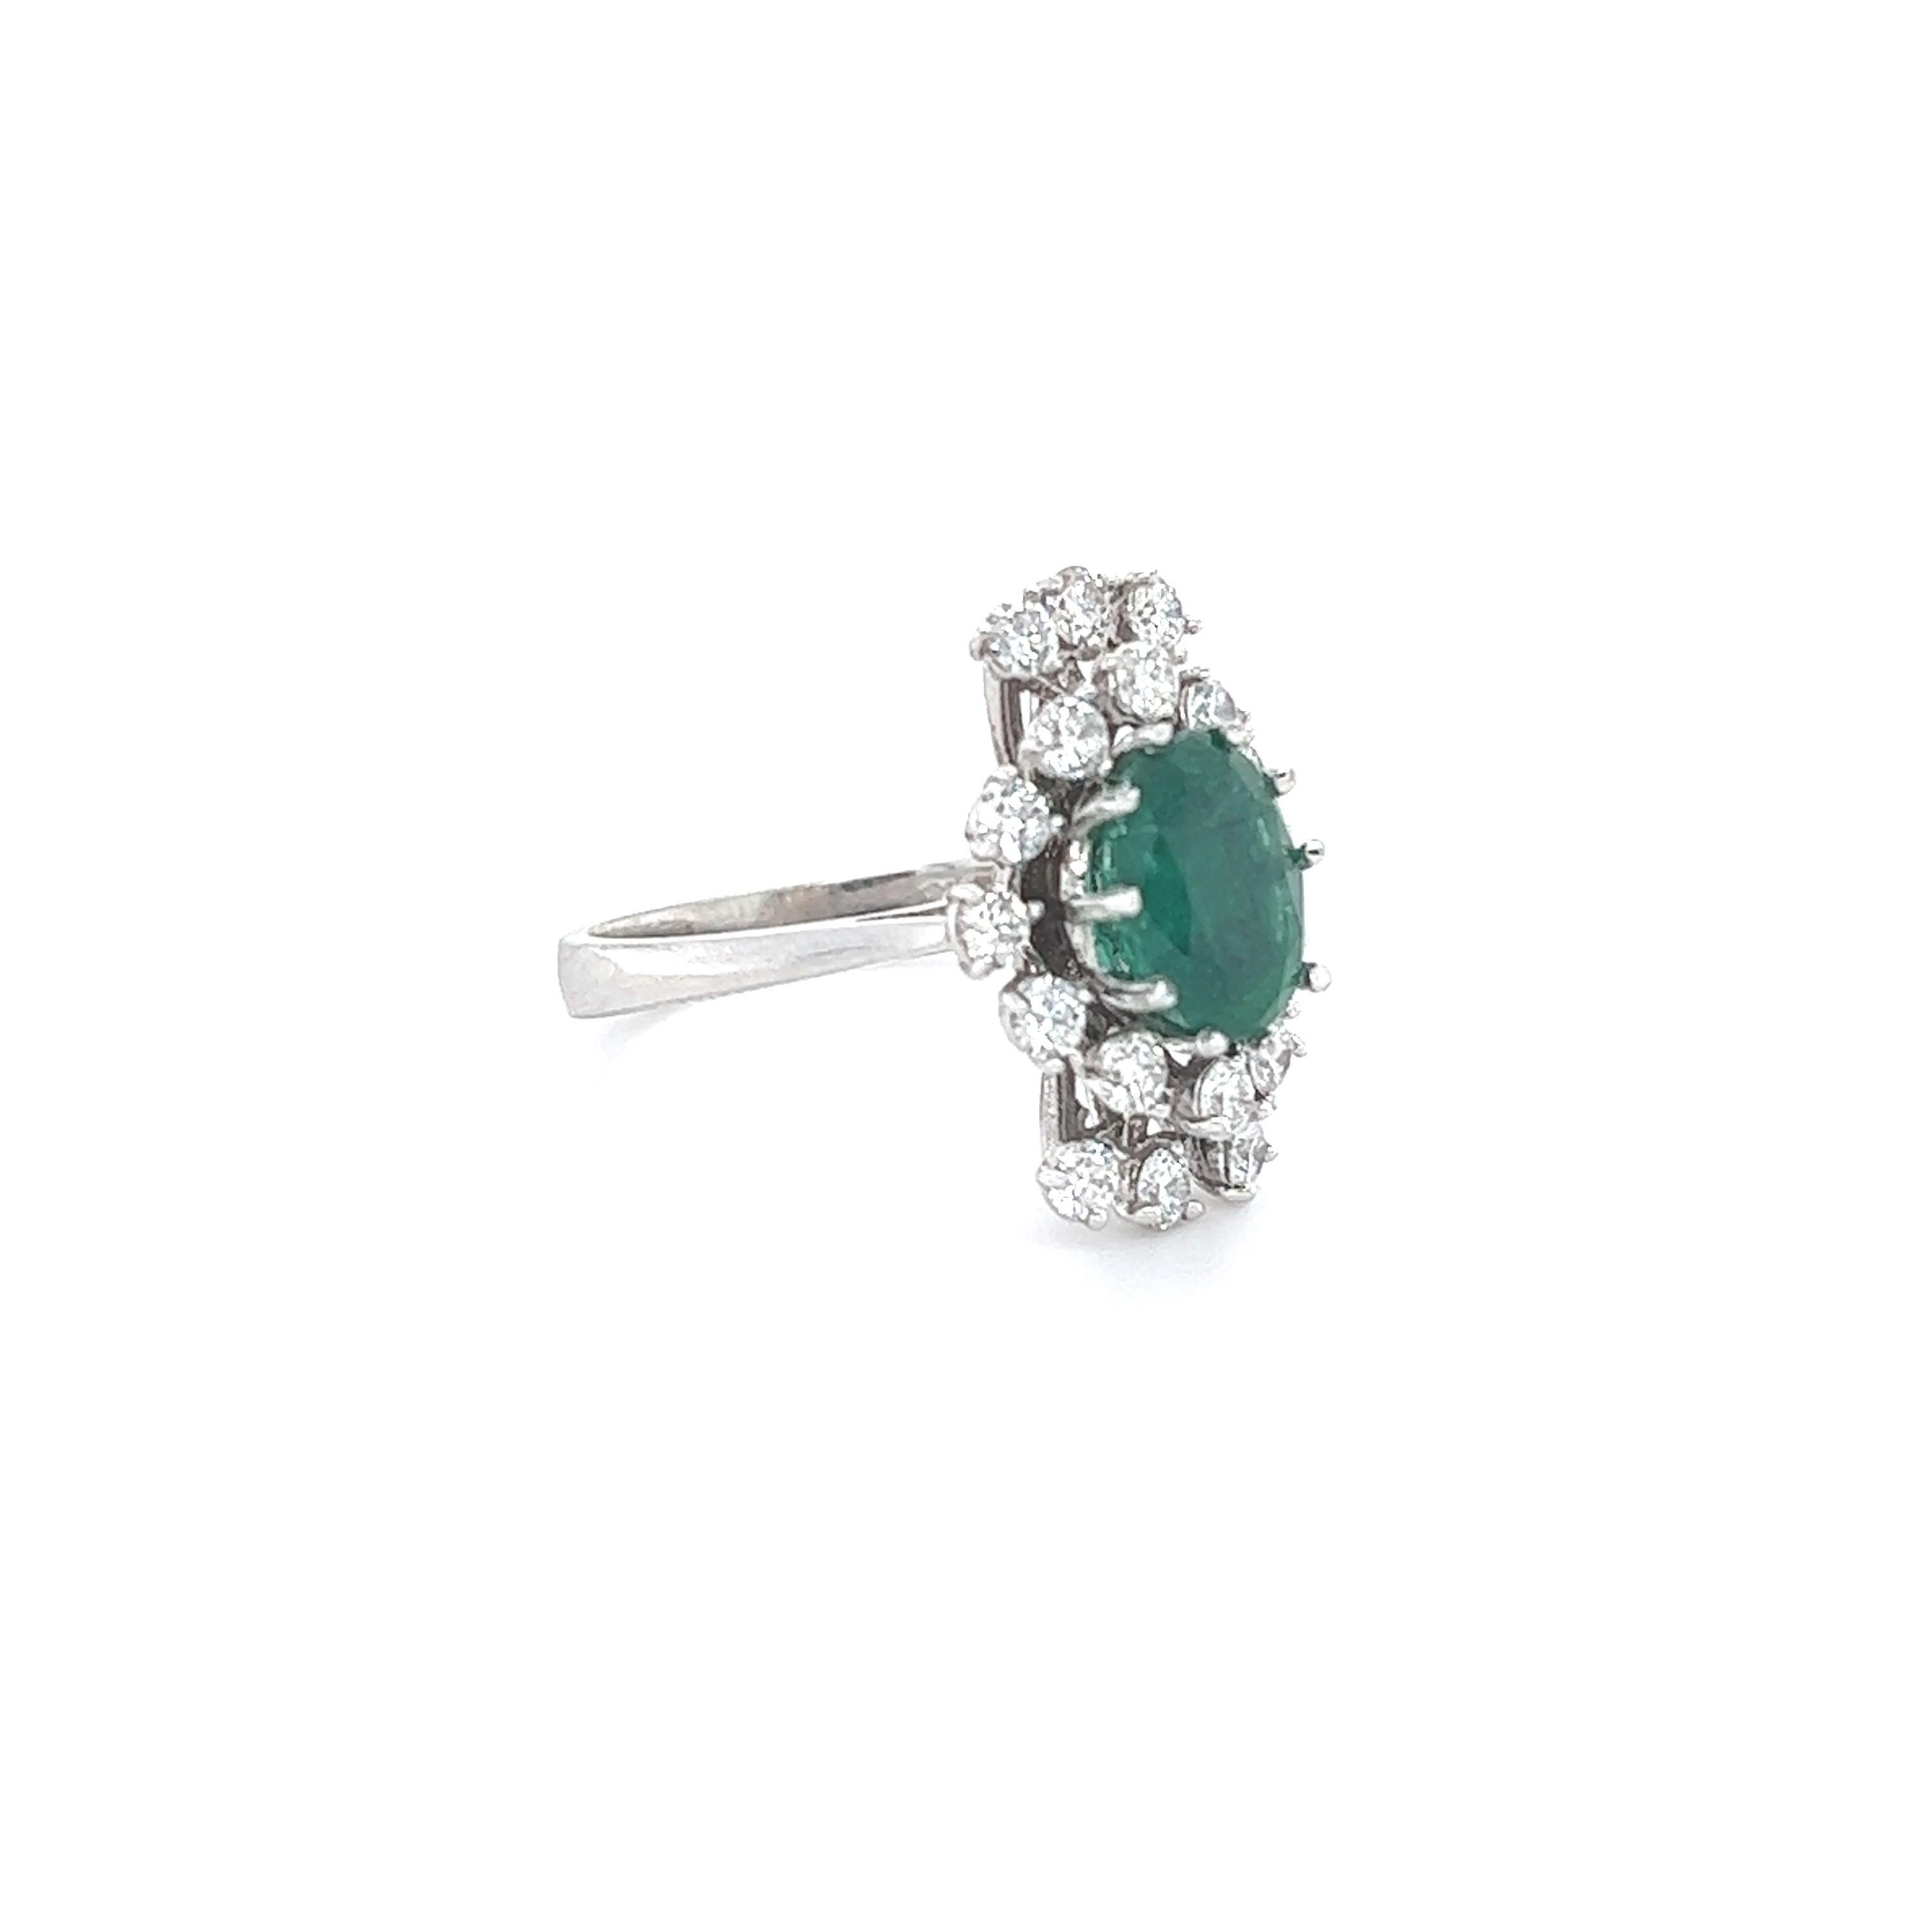 Dieser Ring hat einen 2,01 Karat großen Smaragd im Ovalschliff und ist umgeben von 18 Diamanten im Rundschliff mit einem Gewicht von 0,91 Karat. (Reinheit: SI1, Farbe: F) Das Gesamtkaratgewicht des Rings beträgt 2,92 Karat. 
Der Smaragd im